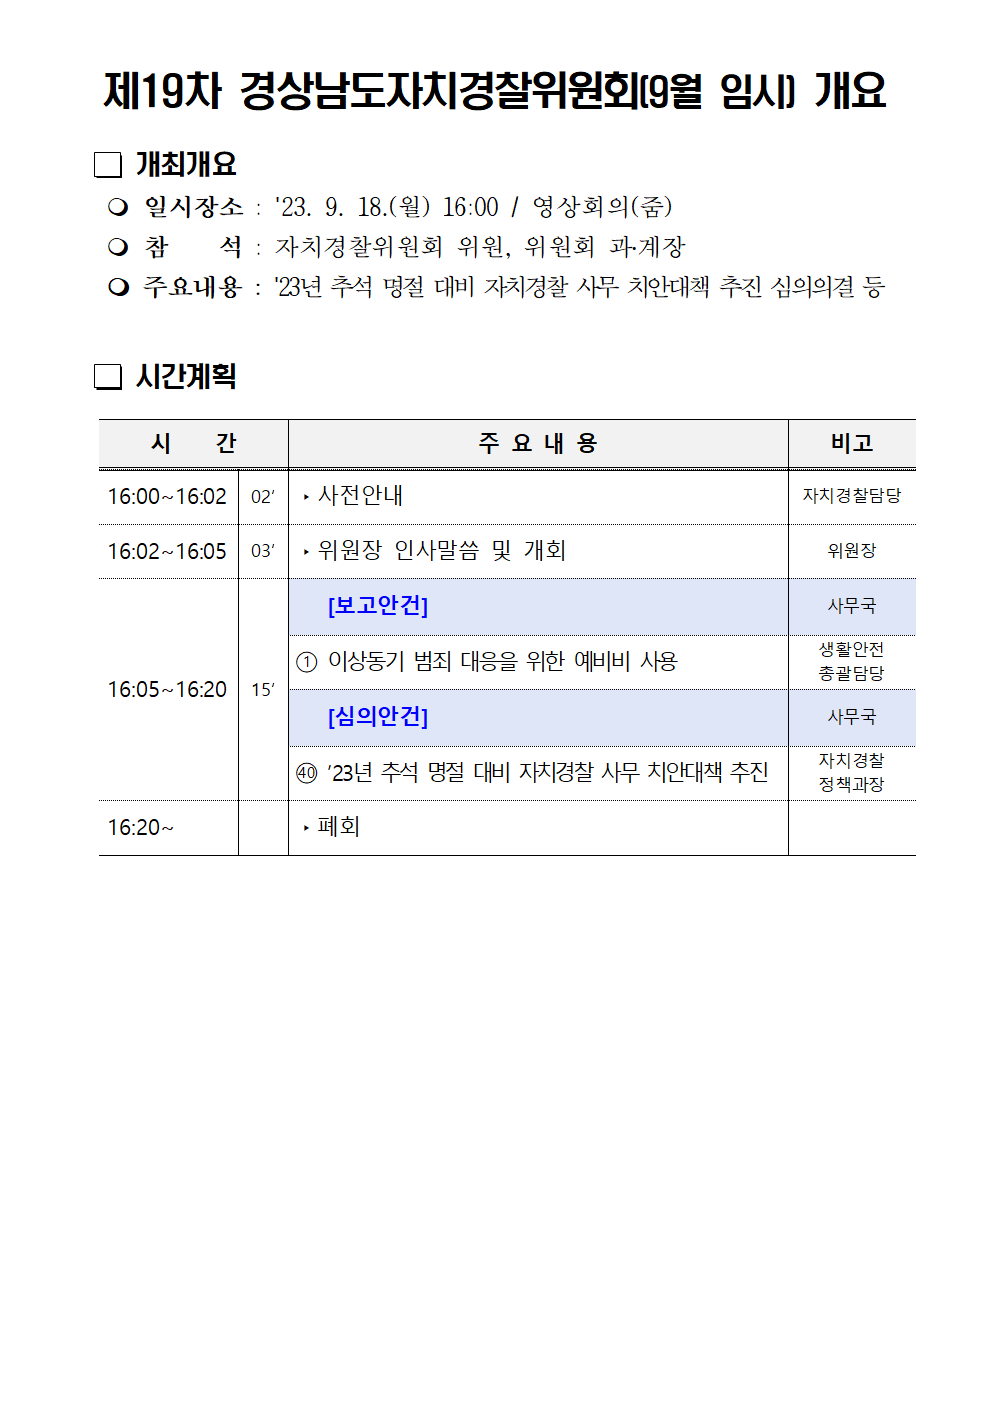 23년 제19차 경상남도자치경찰위원회(9월 임시) 개최 개요(블로그)의 파일 이미지